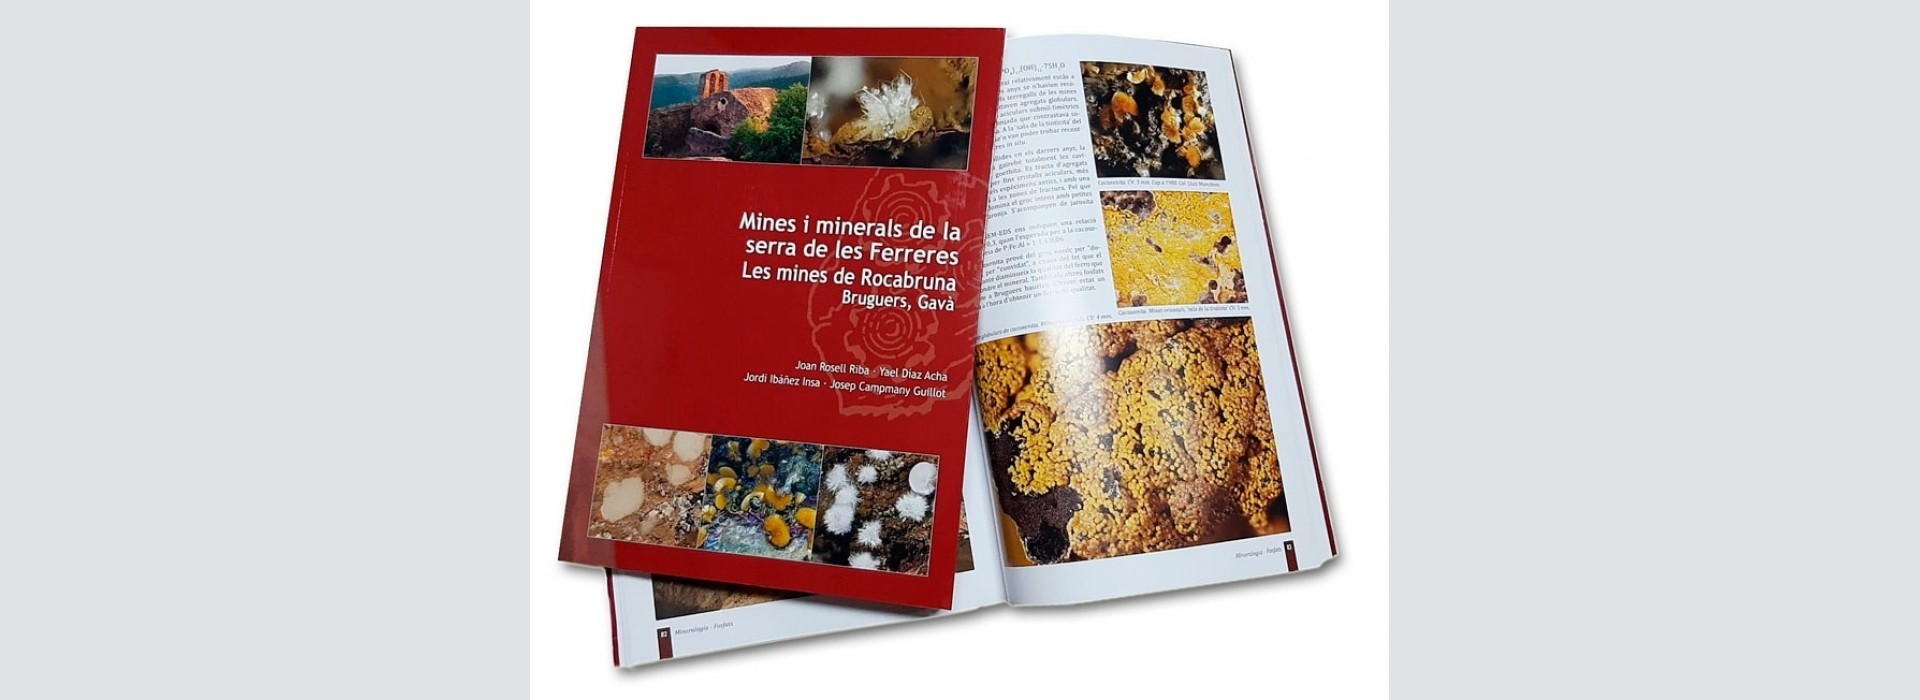 Nou llibre: Mines i minerals de la serra de les Ferreres. Les mines de Rocabruna, Bruguers, Gavà